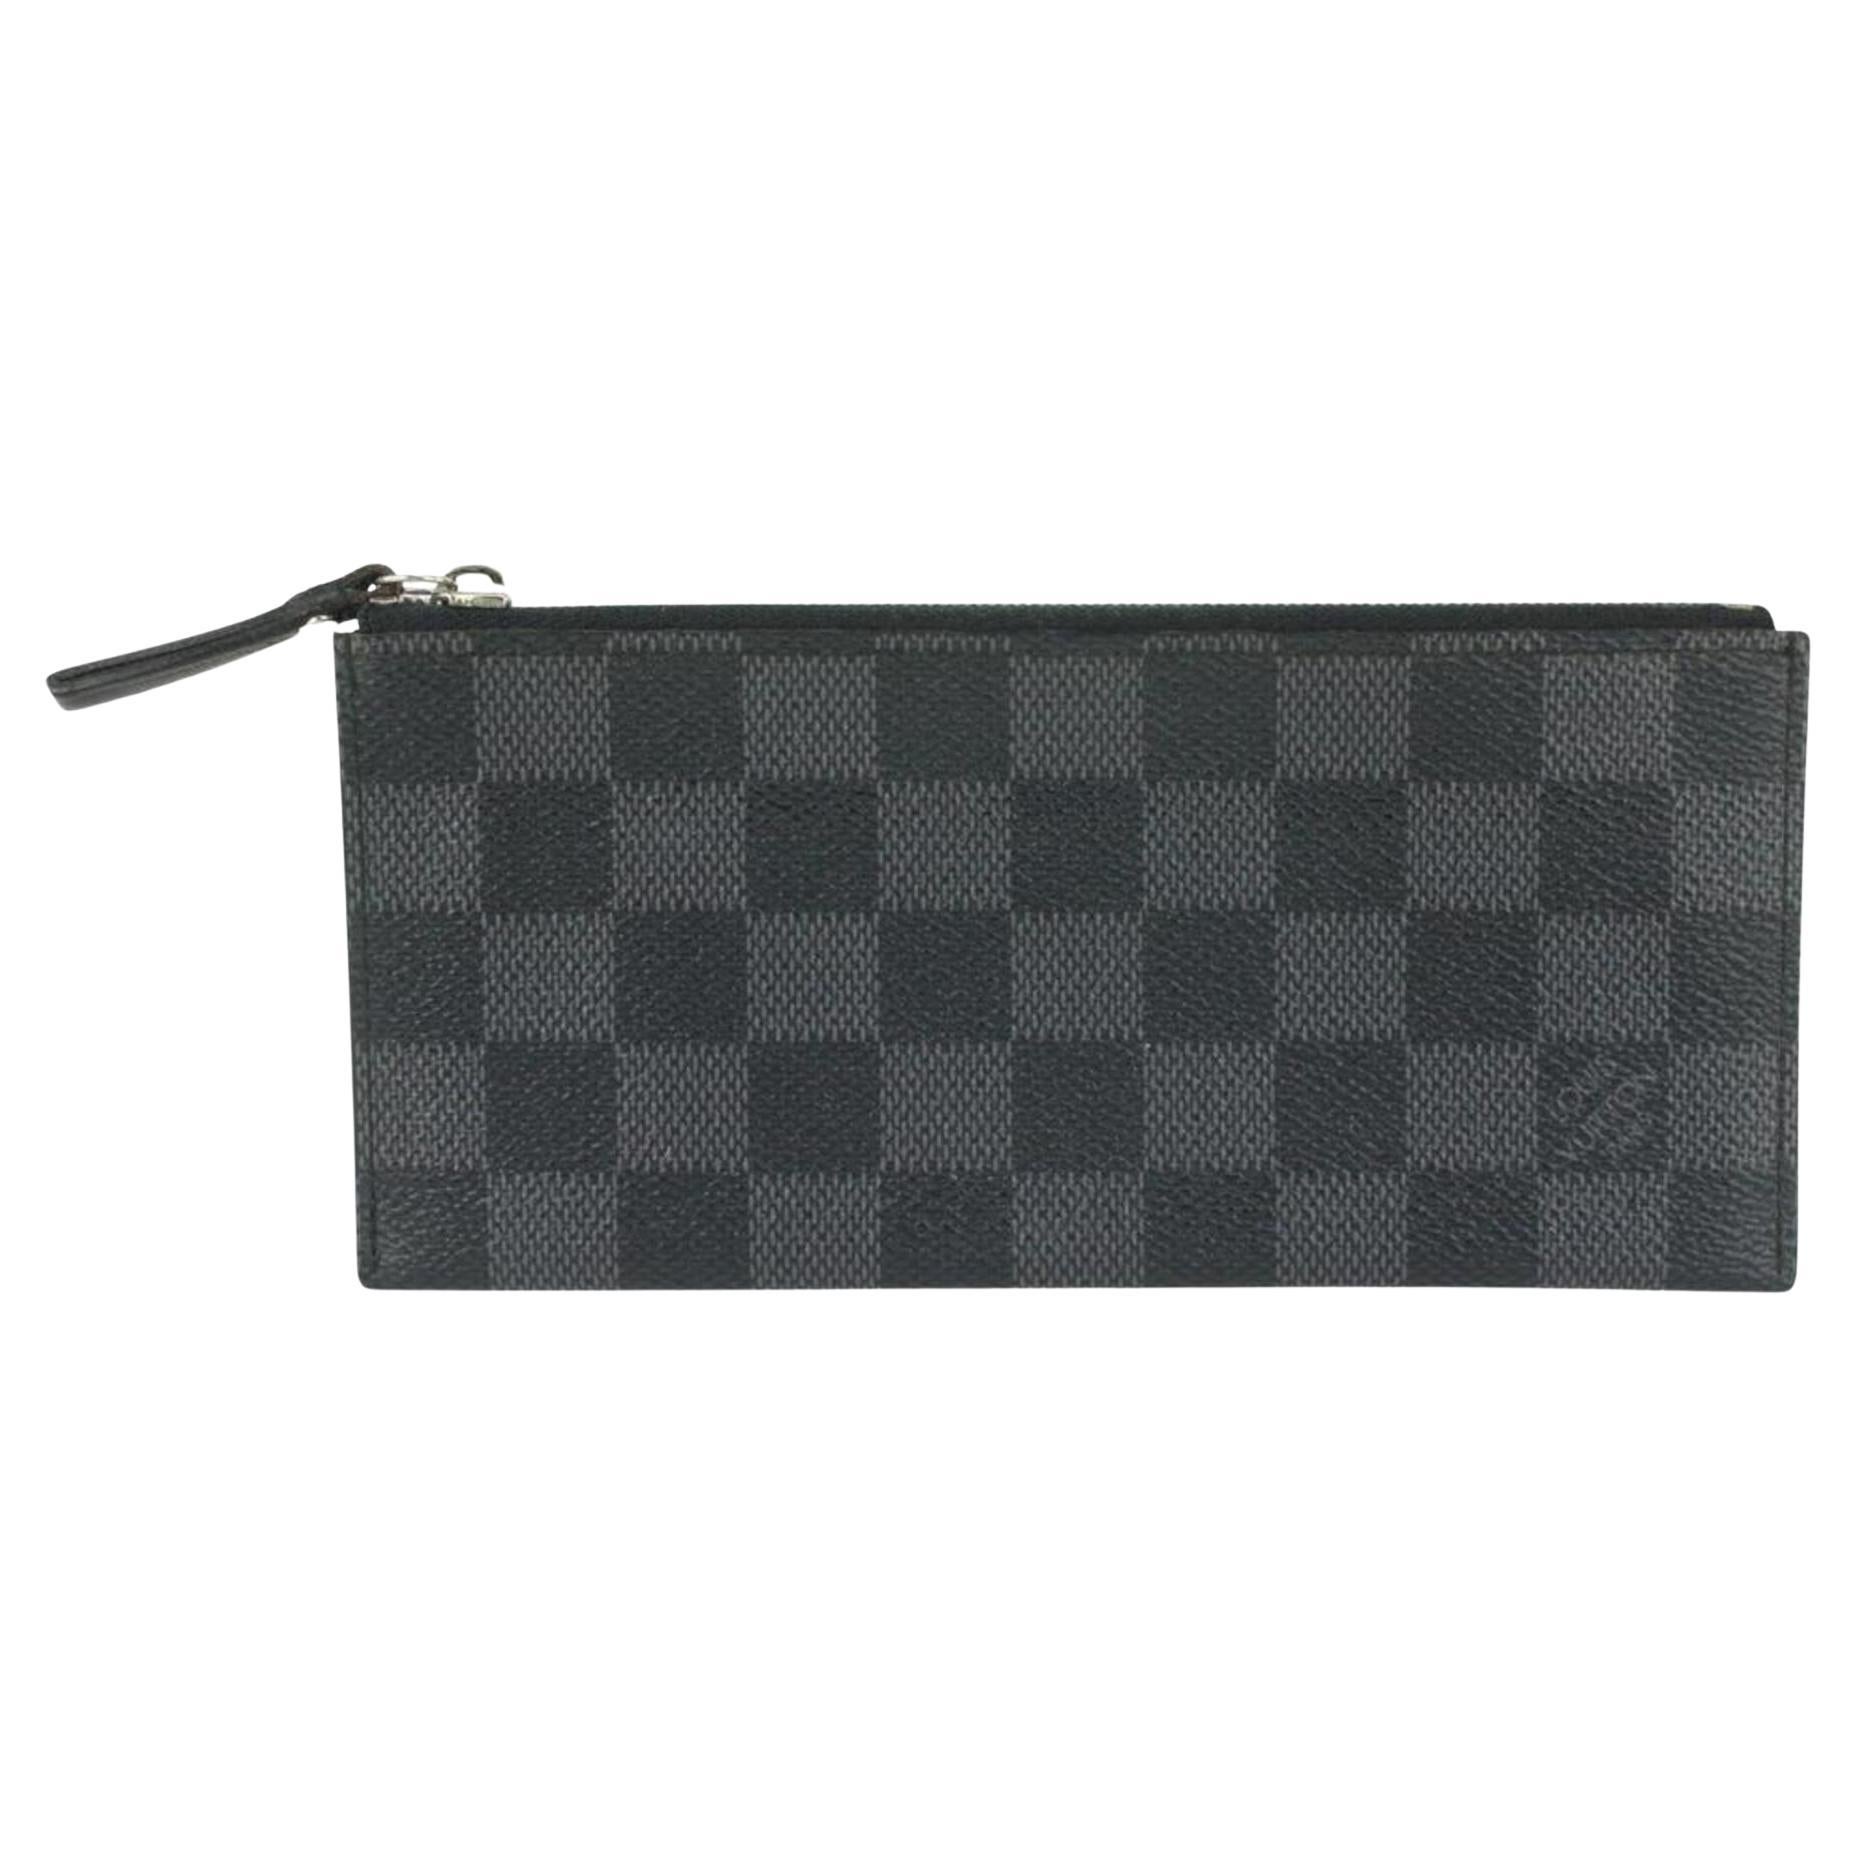 Louis Vuitton Damier Graphite Long Card Holder Wallet Case 176lvs28